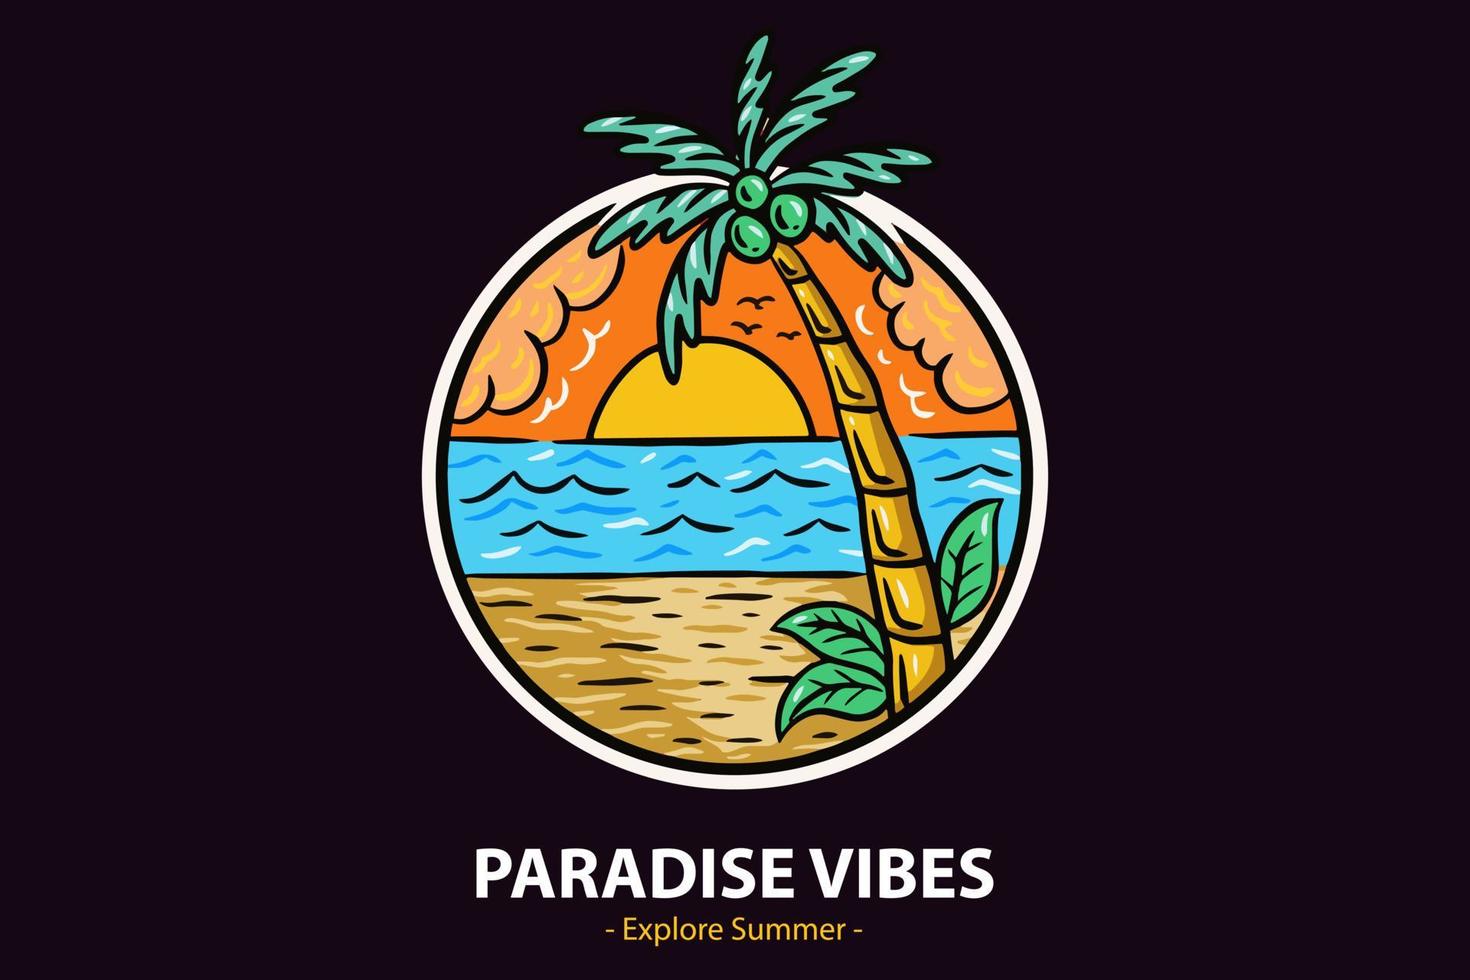 emblemas de horário de verão com pôr do sol e coqueiro onda e surf beach paraíso ilha paraíso vetor